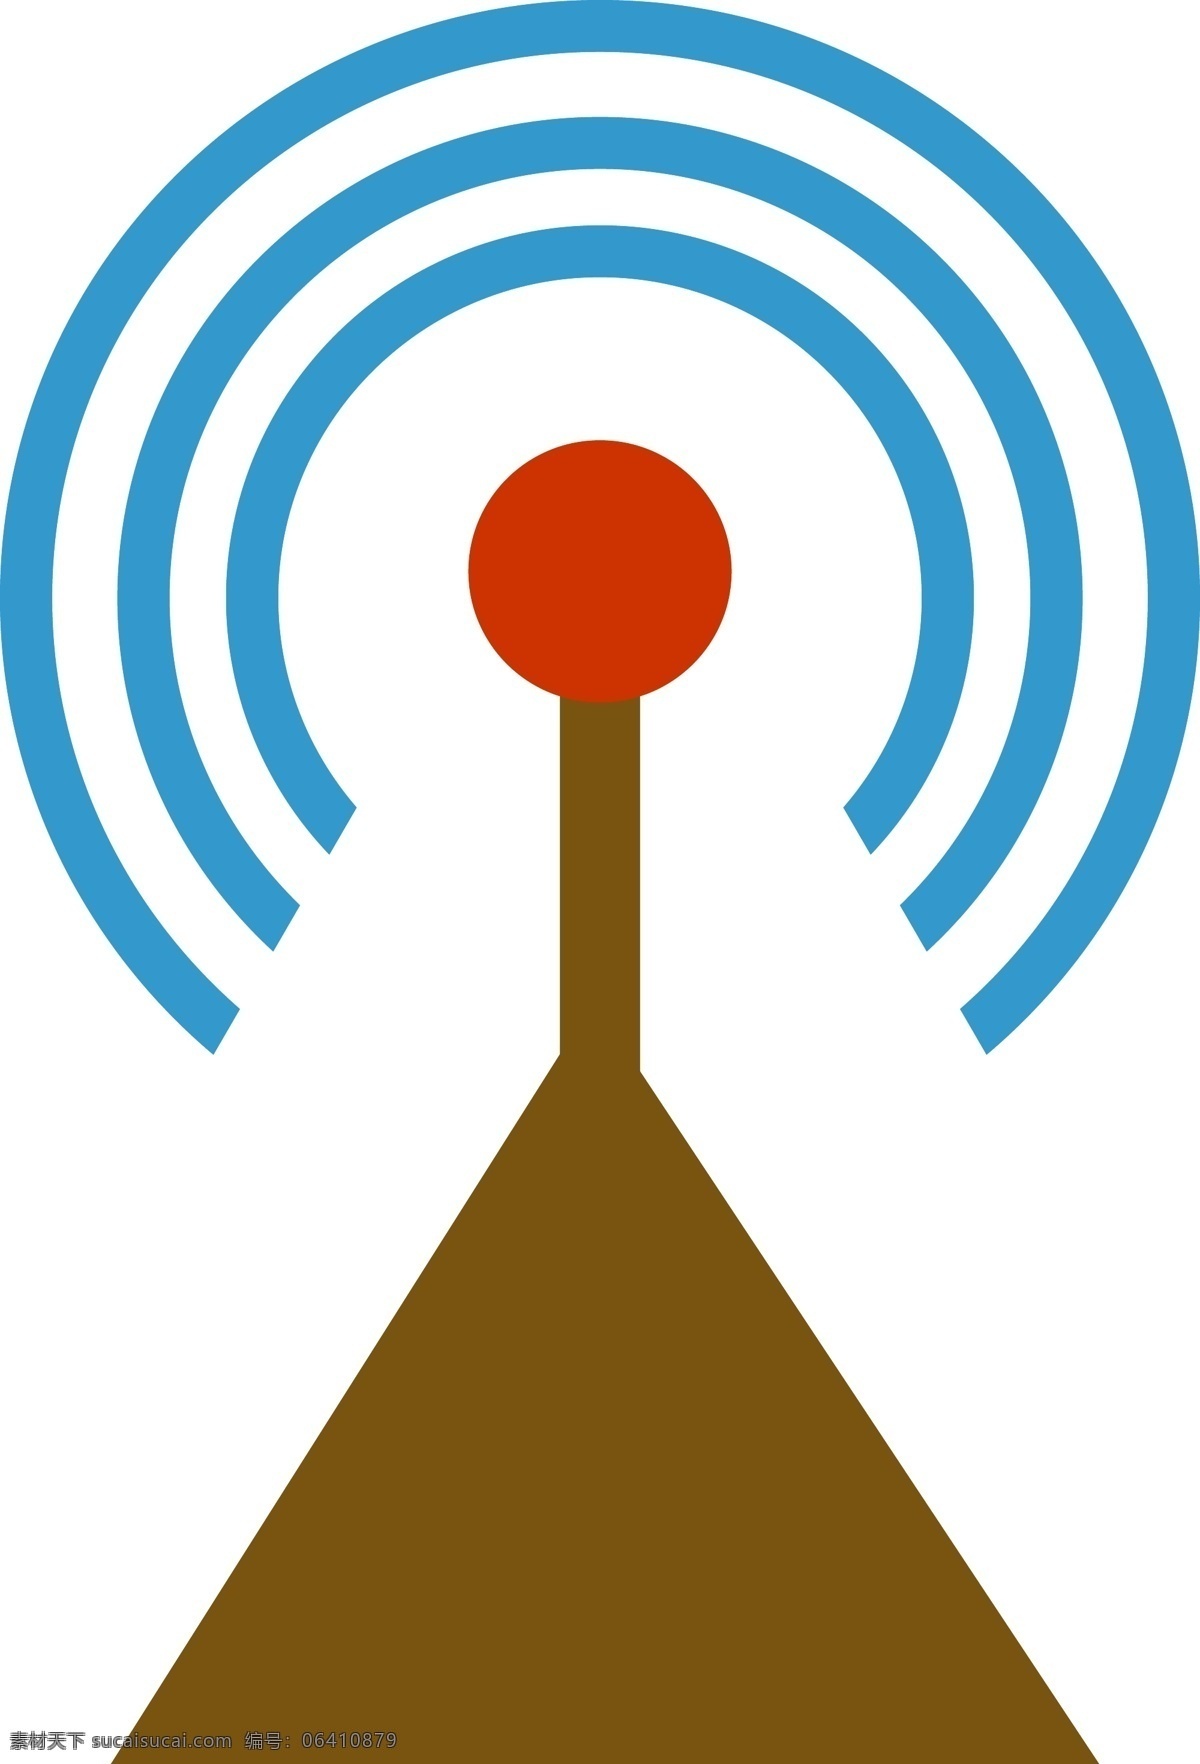 矢量 卫星 发射 信号 接收 天气监测 通讯 wifi 无线网络 网络覆盖 信号好 网络手机 流量 发射信号 信号塔